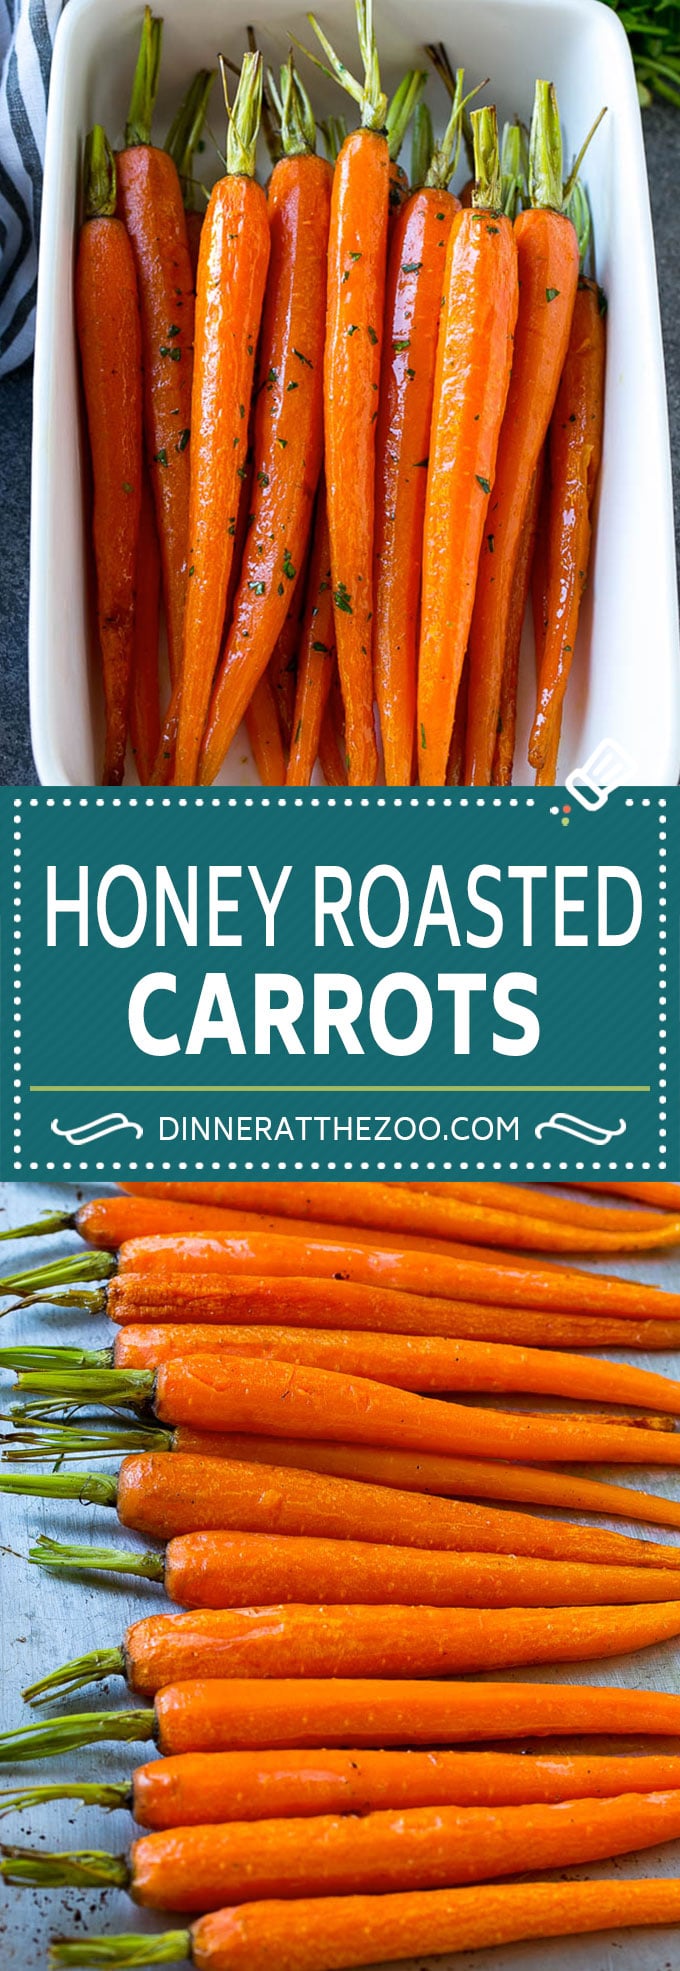 Esta receta de zanahorias asadas con miel consiste en zanahorias enteras, remojadas en miel y condimentos, luego asadas a fuego alto hasta que estén tiernas y caramelizadas.